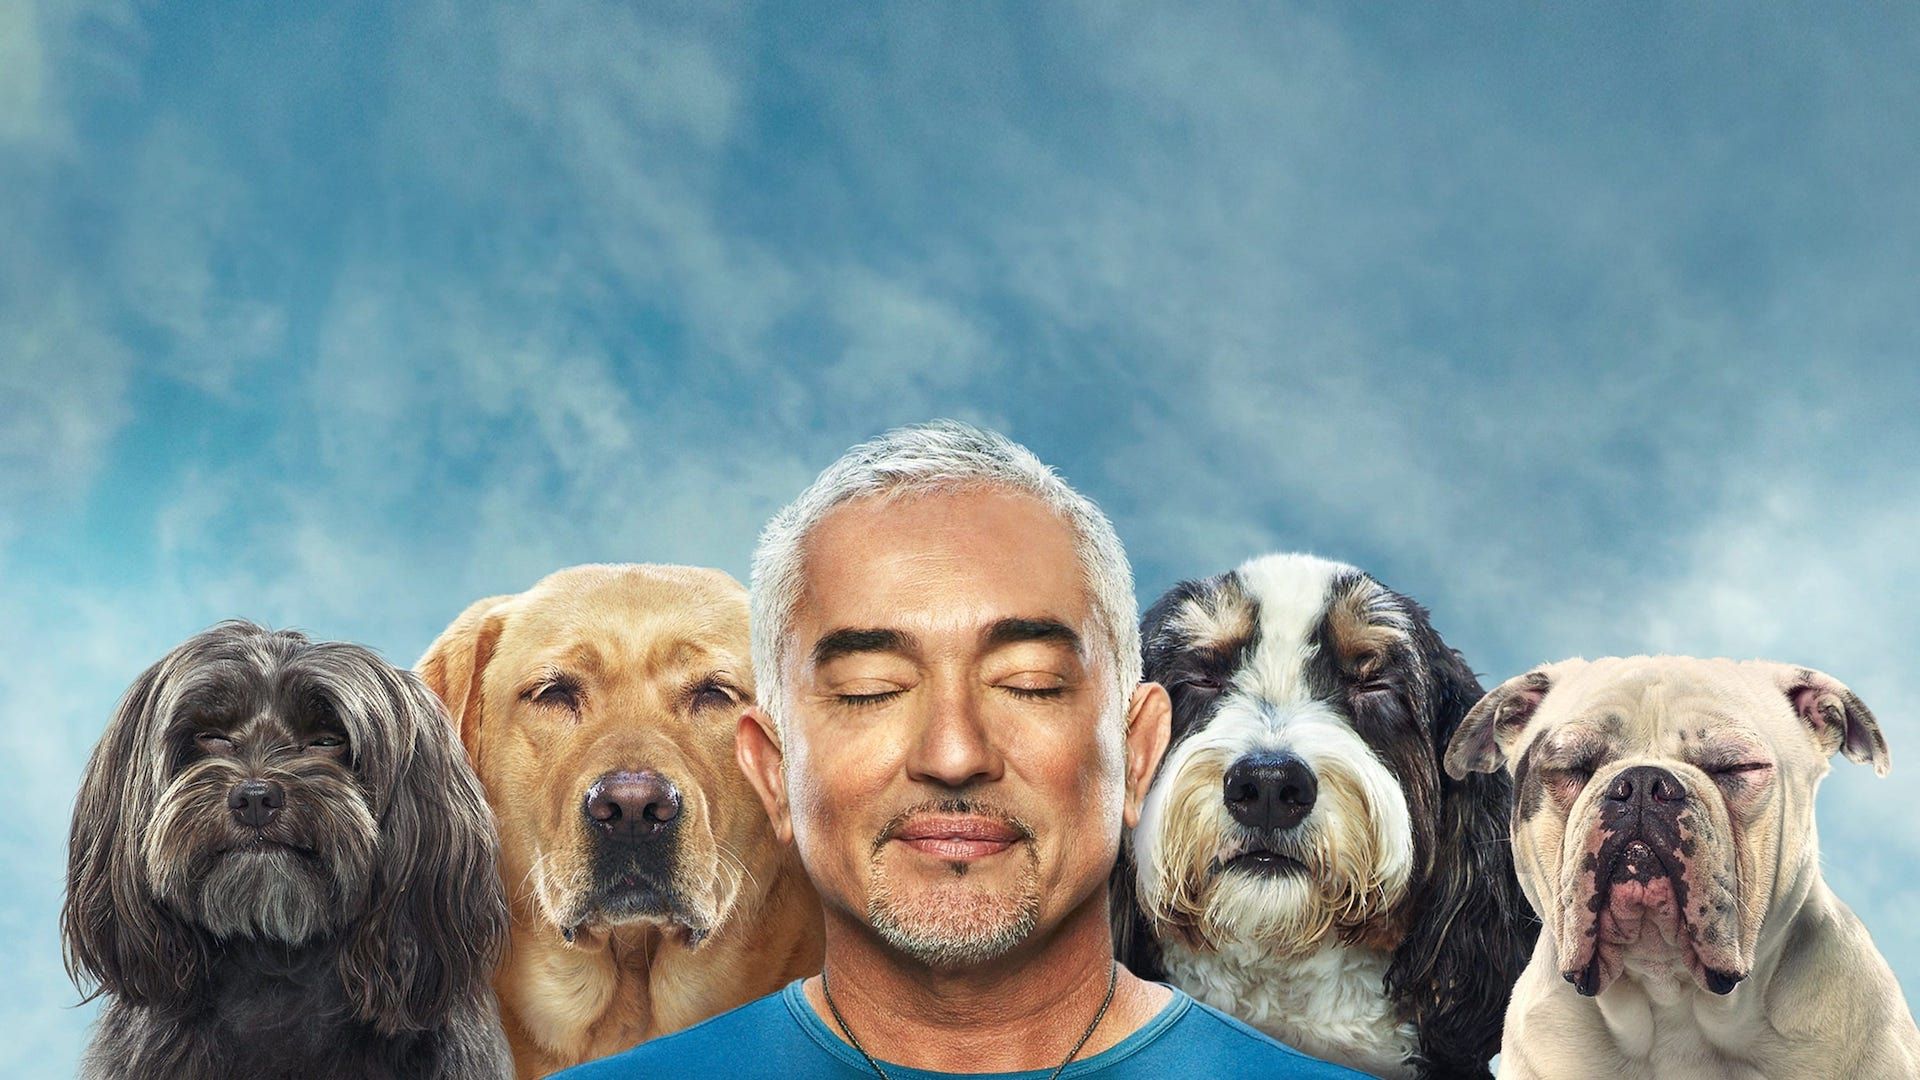 Cesar Millan: Better Human Better Dog background